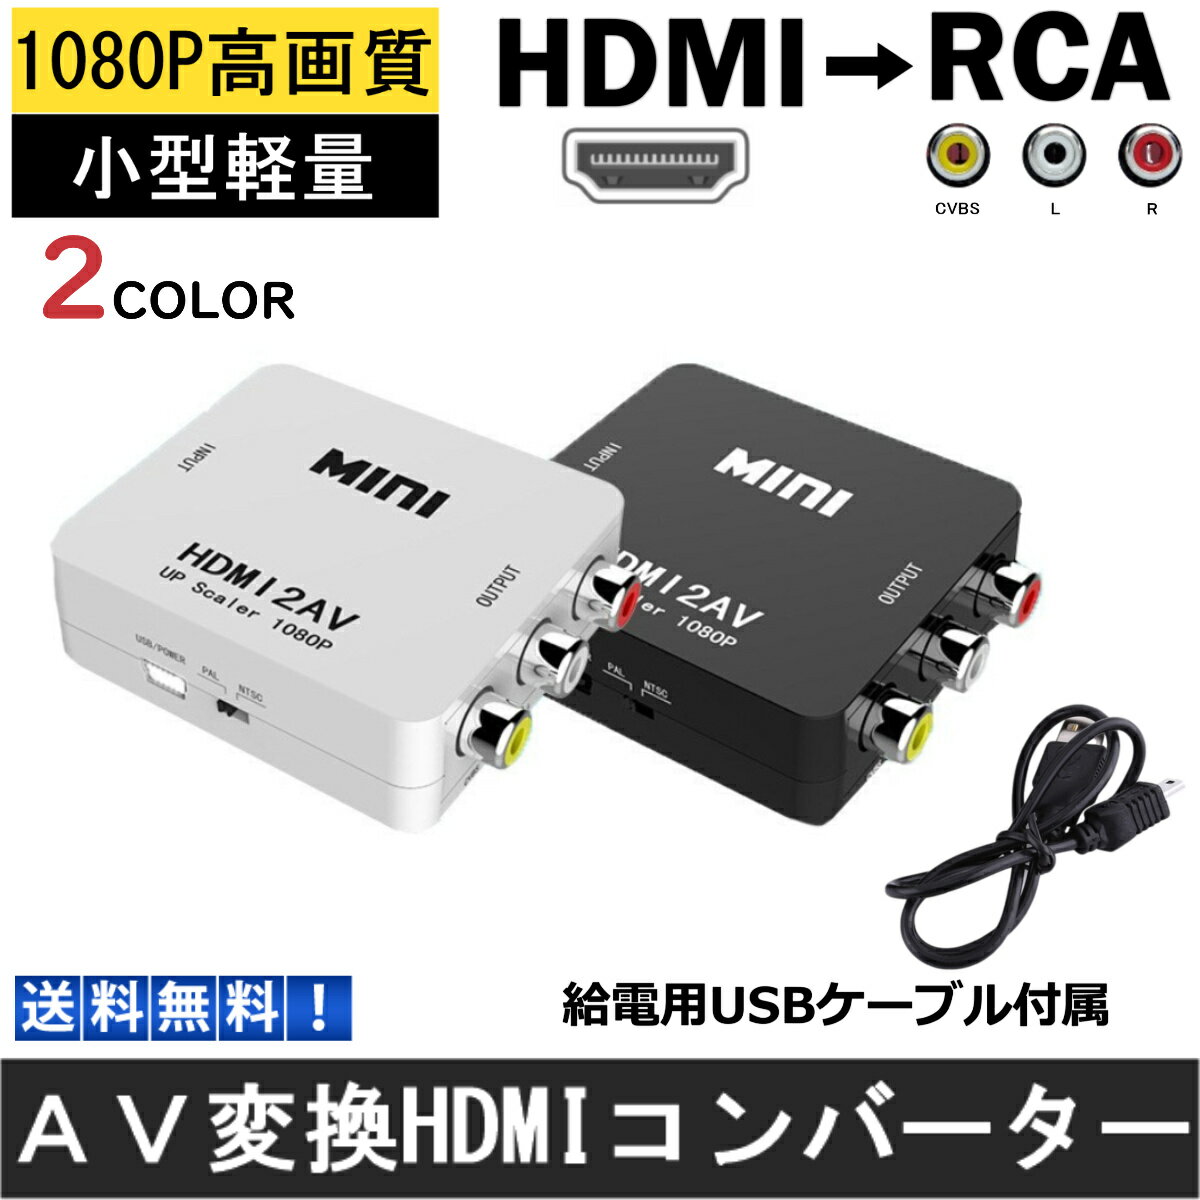 HDMI RCA 変換器 切替器 変換 給電用USBケーブル付き コンポジット HDMI2AV HDMI to RCA変換アダプタ ダウンコンバー…